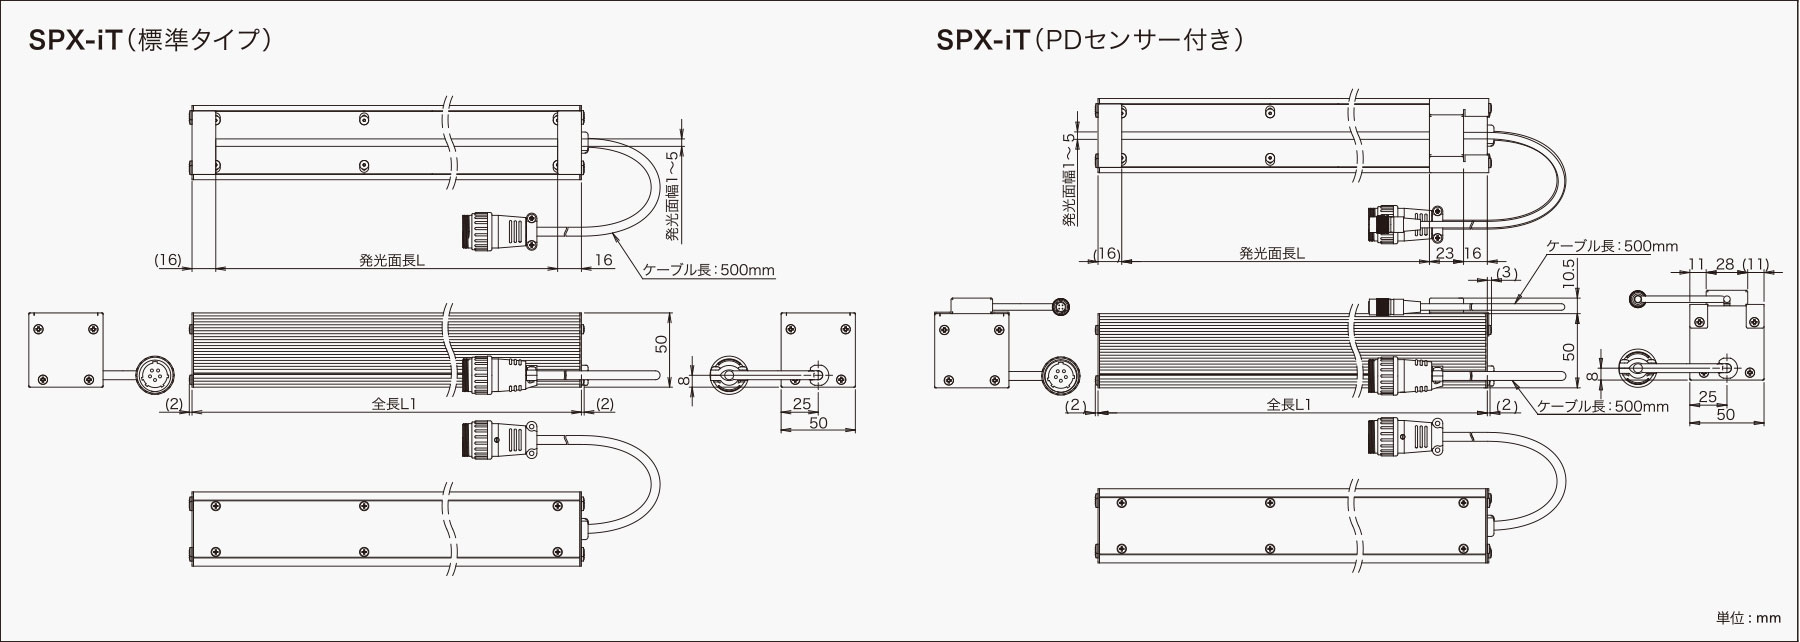 SPX-iT 外観図